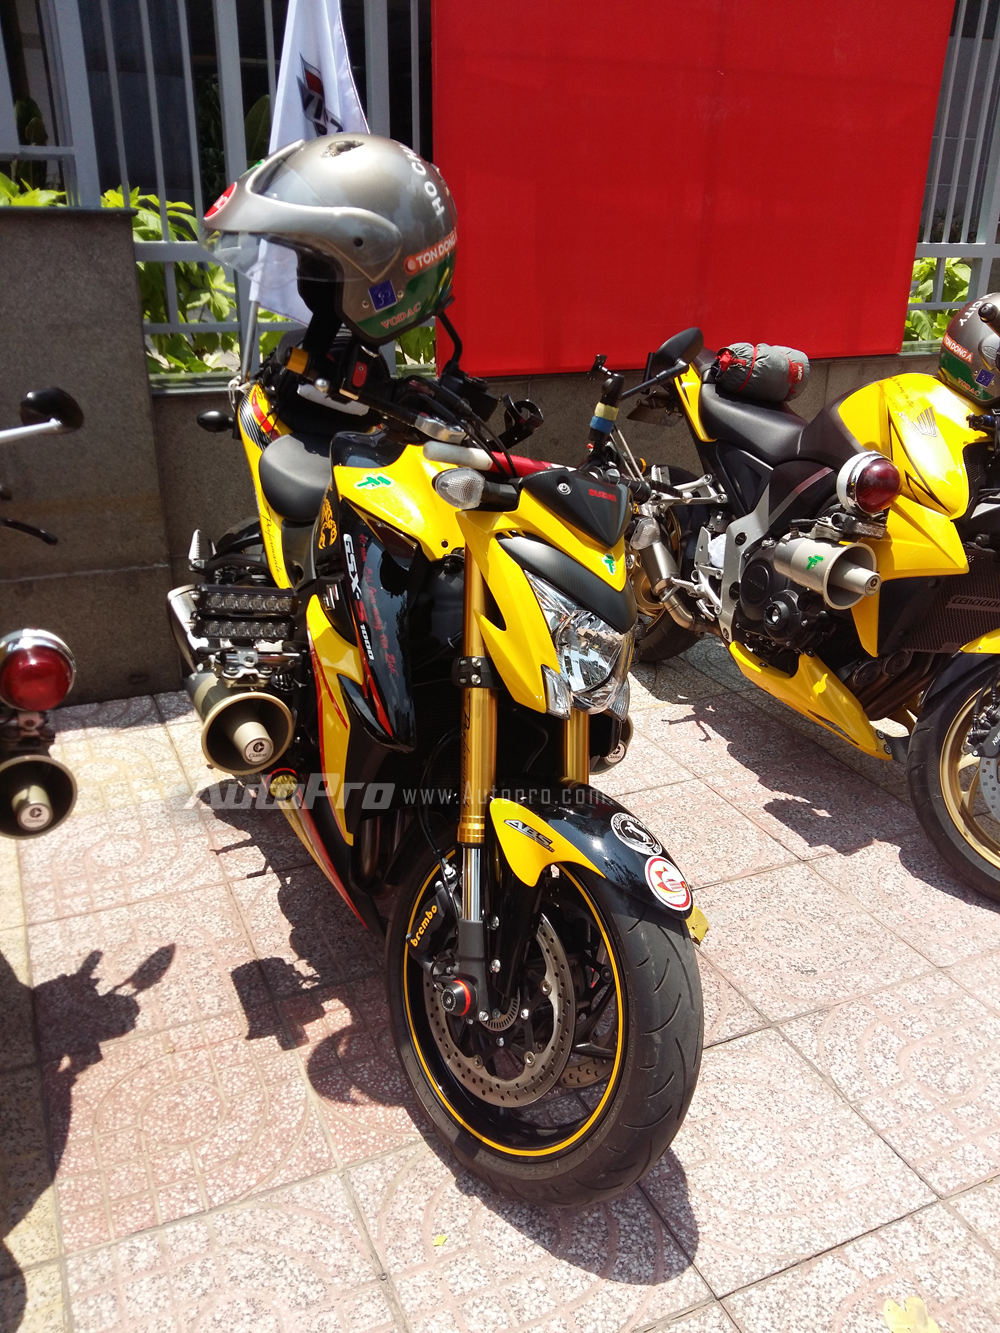 
Đối thủ của Kawasaki Z1000, Suzuki GSX-S1000 2015 cũng góp mặt trong đoàn mô tô dẫn đoàn. Tại thị trường Việt Nam, chiếc nakedbike của Suzuki được phân phối chính hãng với 2 màu sắc xanh dương và đỏ-đen cùng mức giá bán 415 triệu Đồng.
